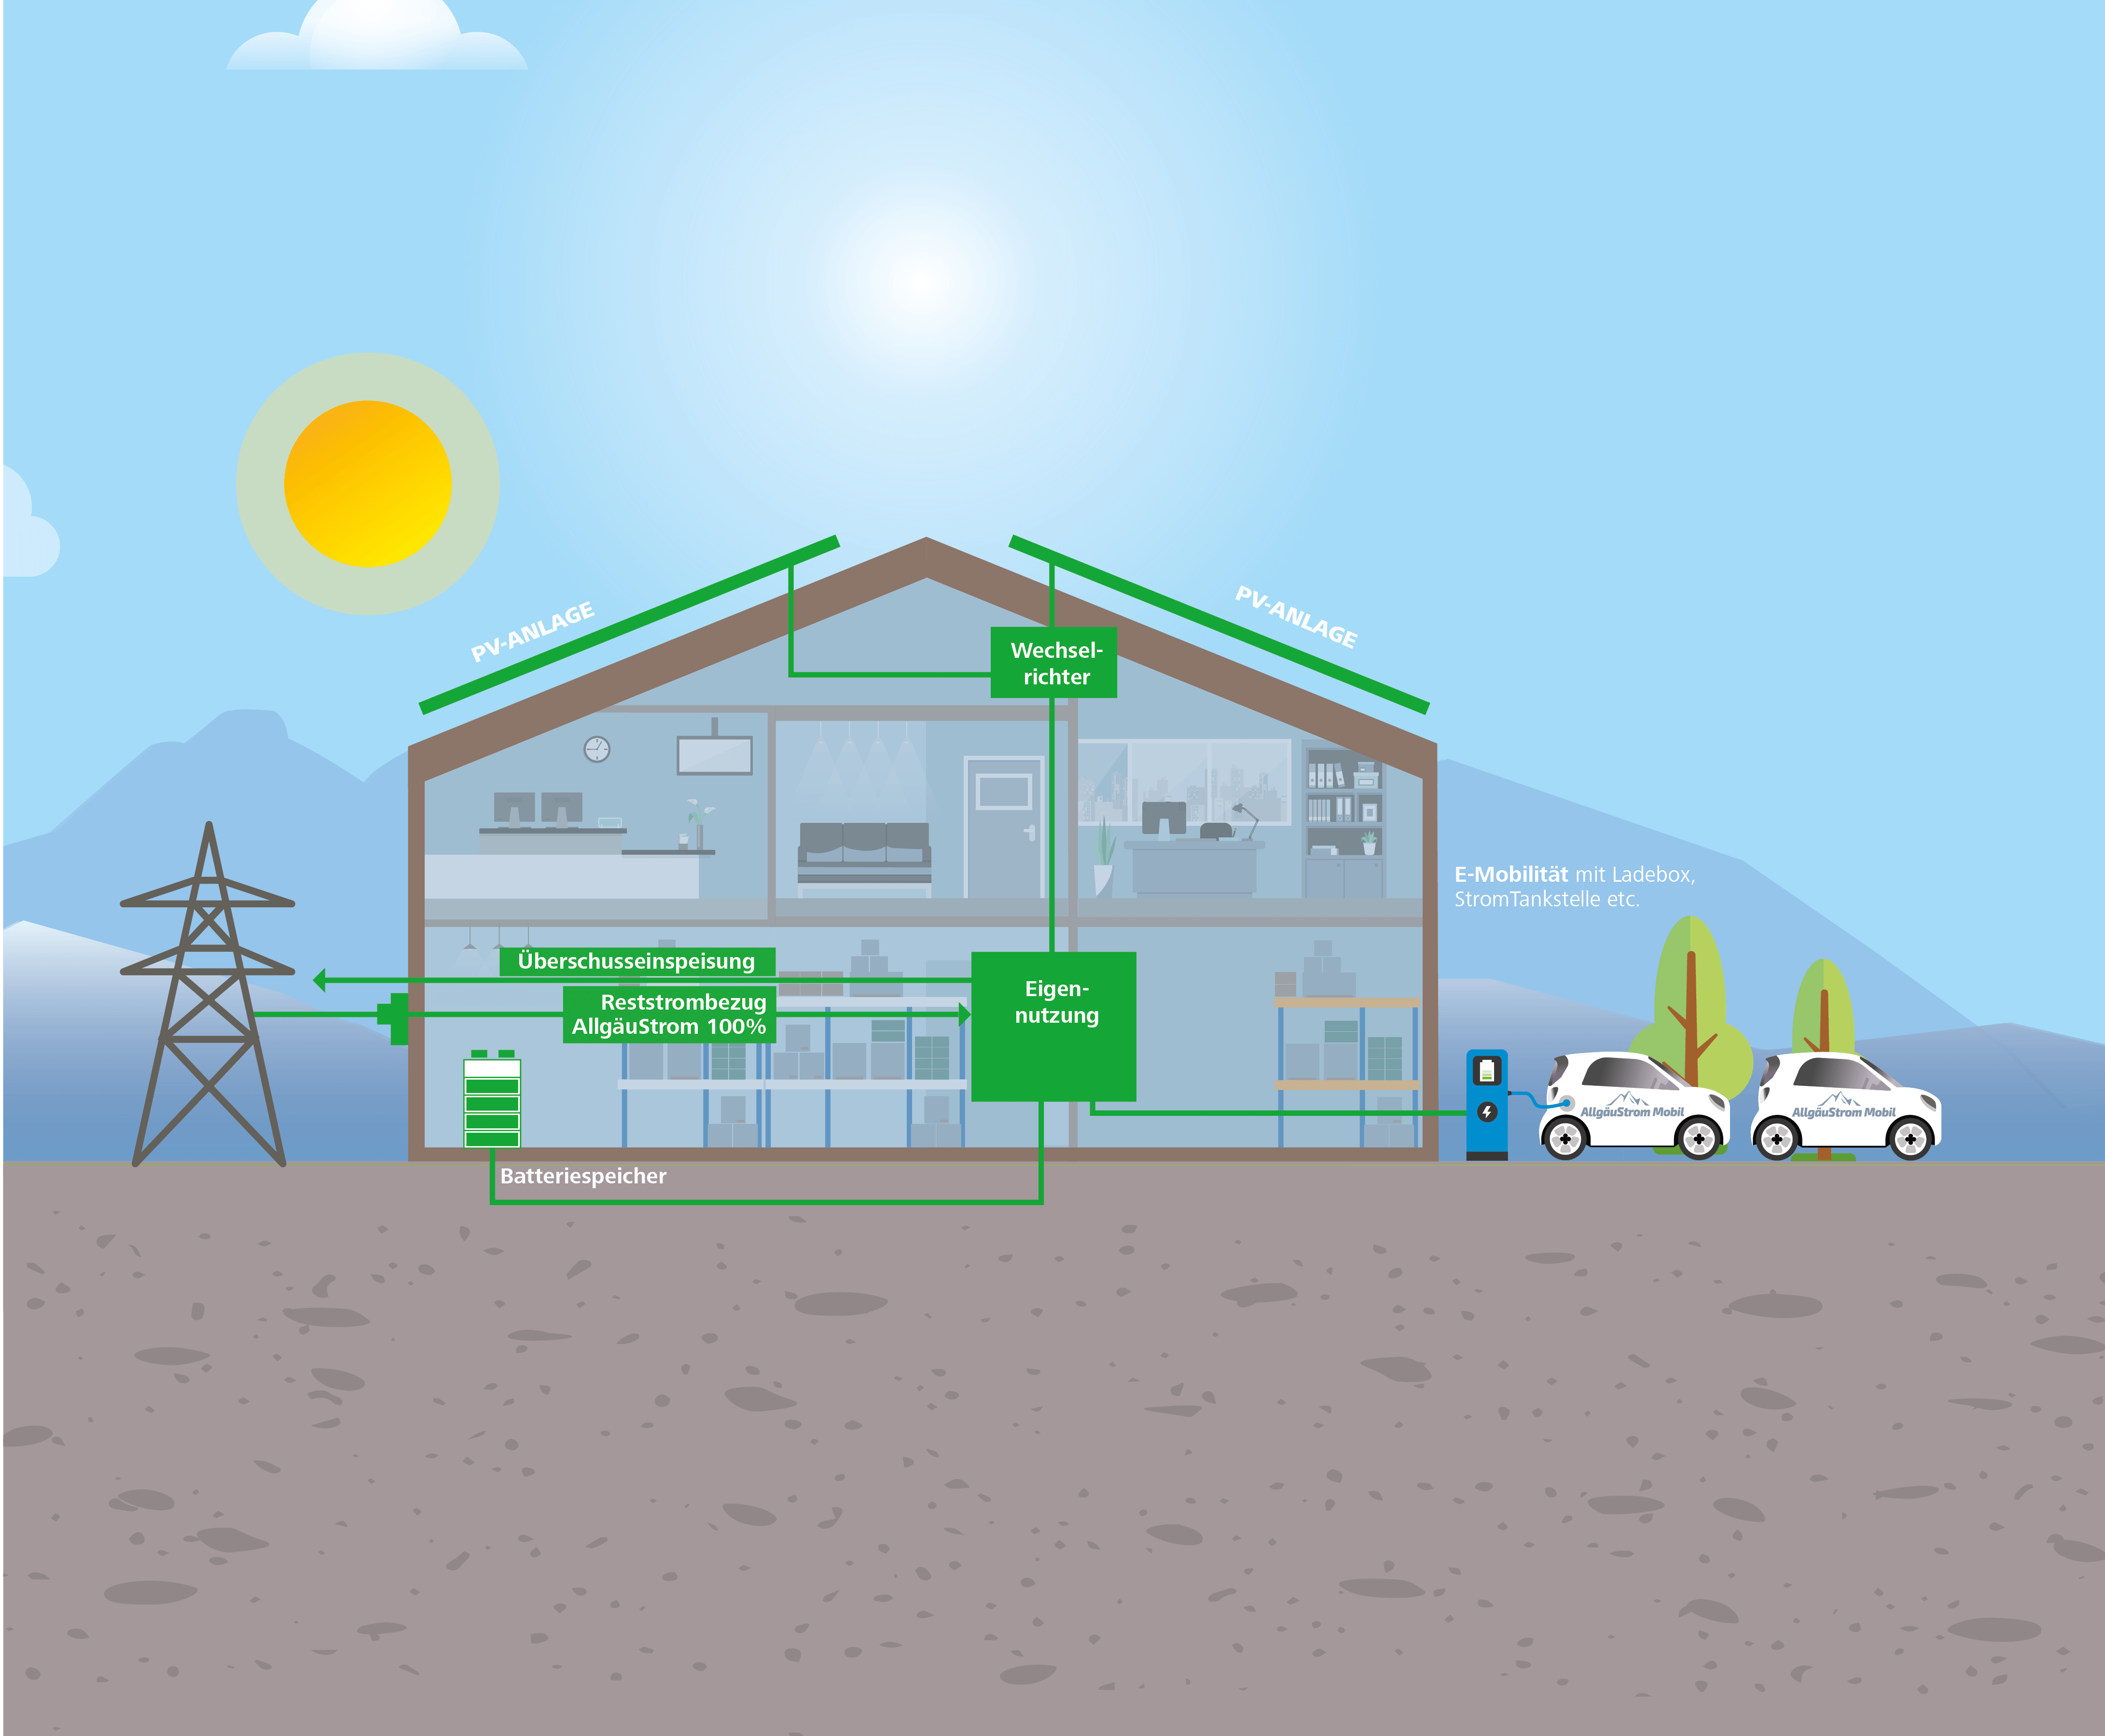 Auf dem Bild sieht man eine Infografik über ein Energiehaus